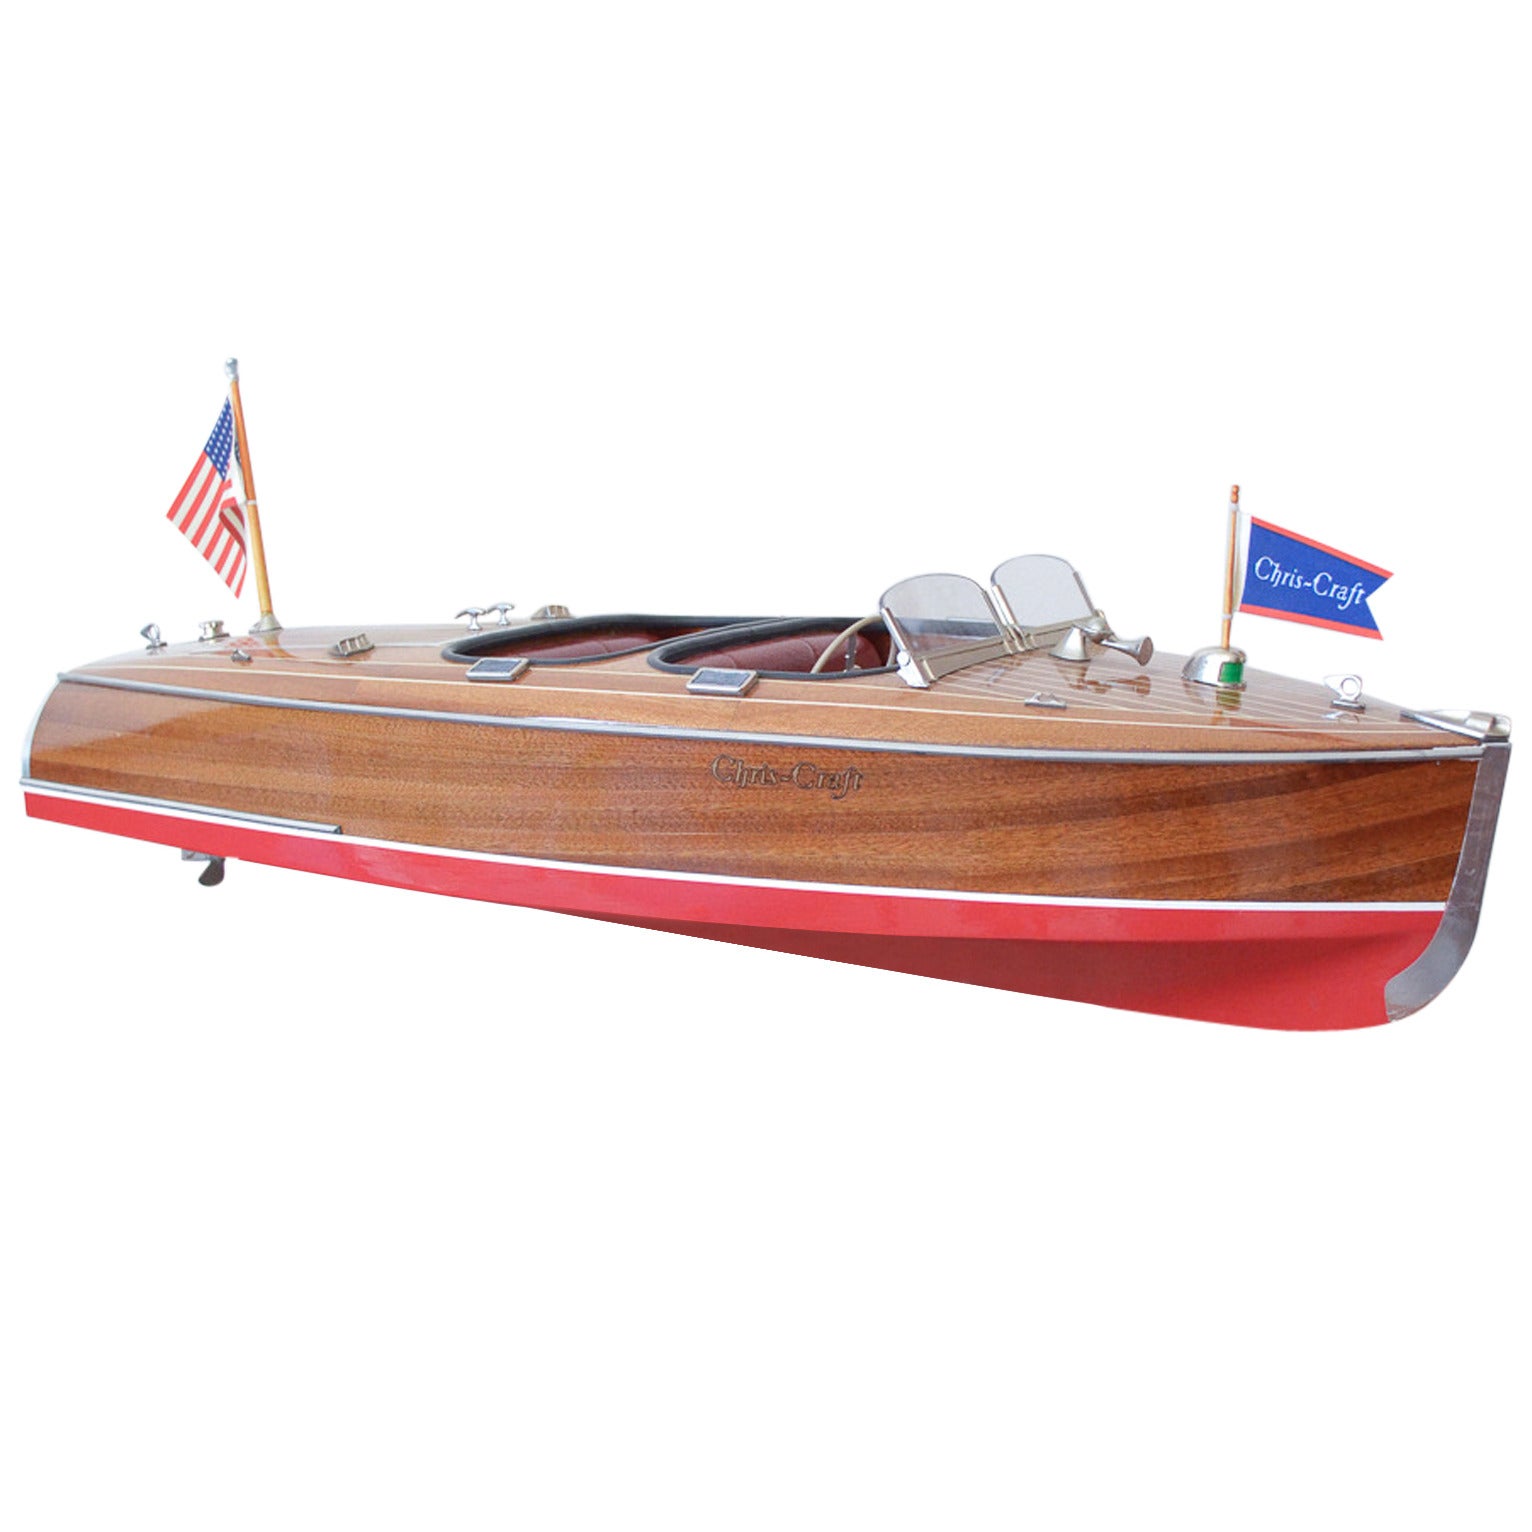 Vintage 1950s Chris Craft Model Boat